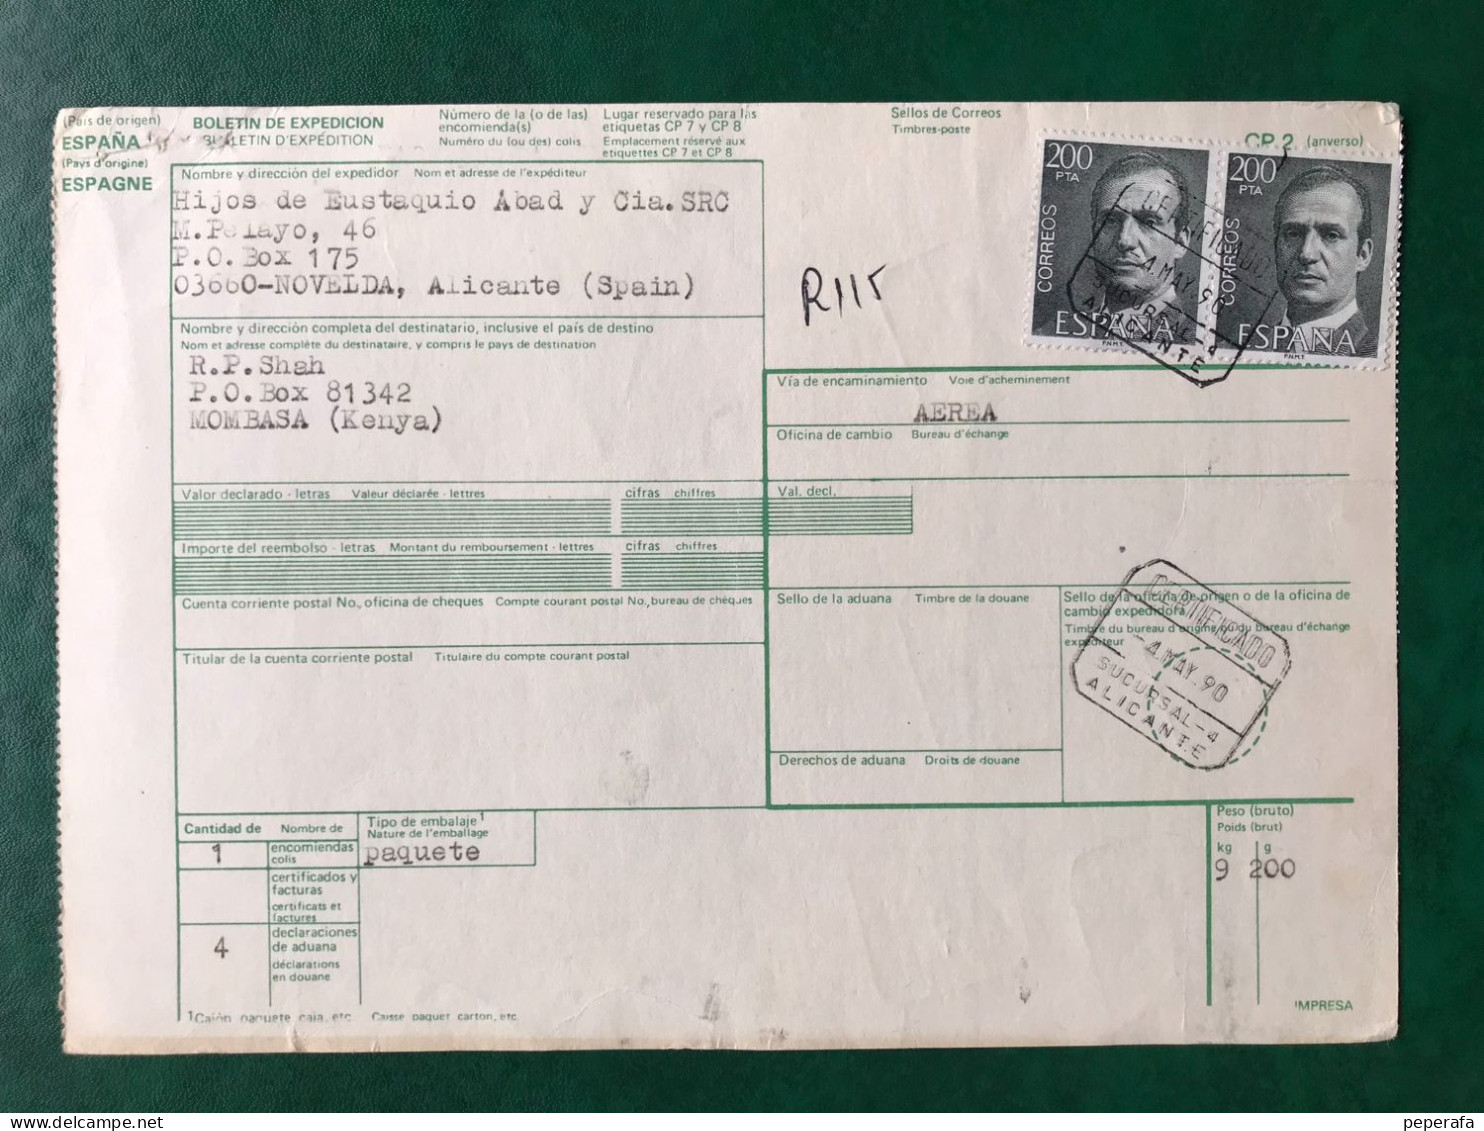 España Spain 1990, DOCUMENTO POSTAL BOLETÍN DE EXPEDICIÓN 3400 PTS, Postmark Cancel, RARO!!! - Machine Labels [ATM]